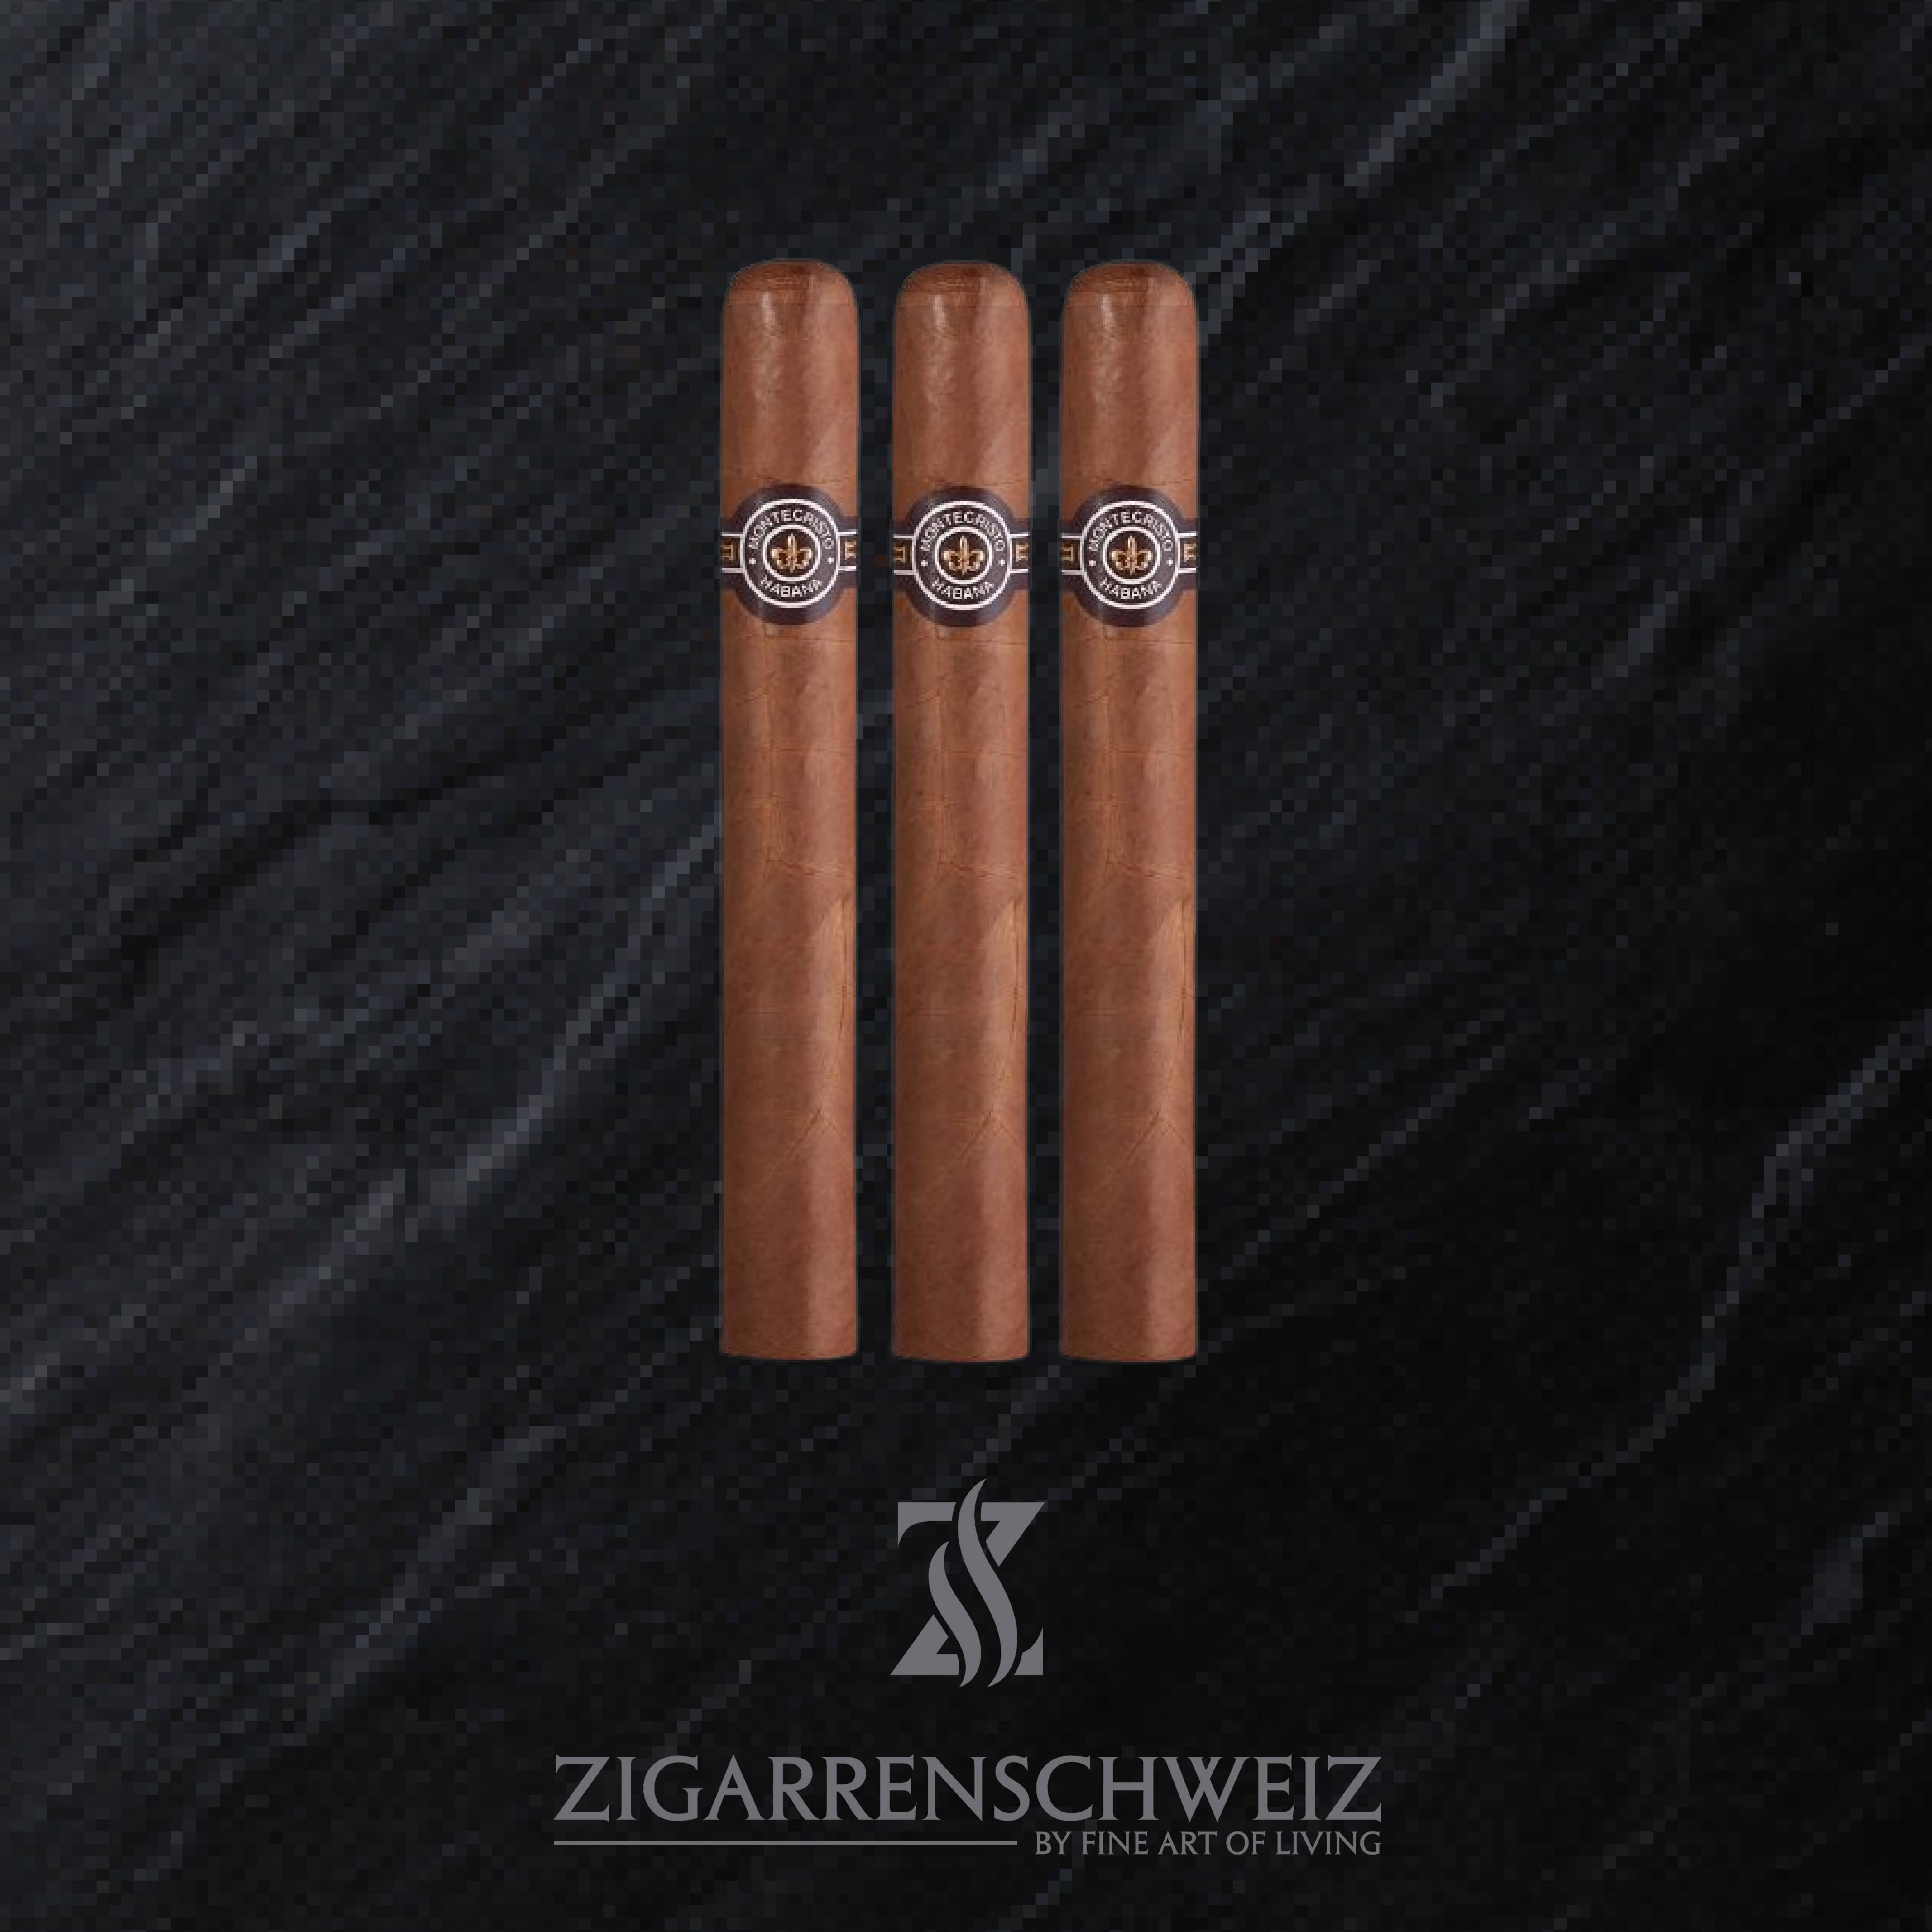 3er Etui Montecristo No 3 Zigarren aus Kuba